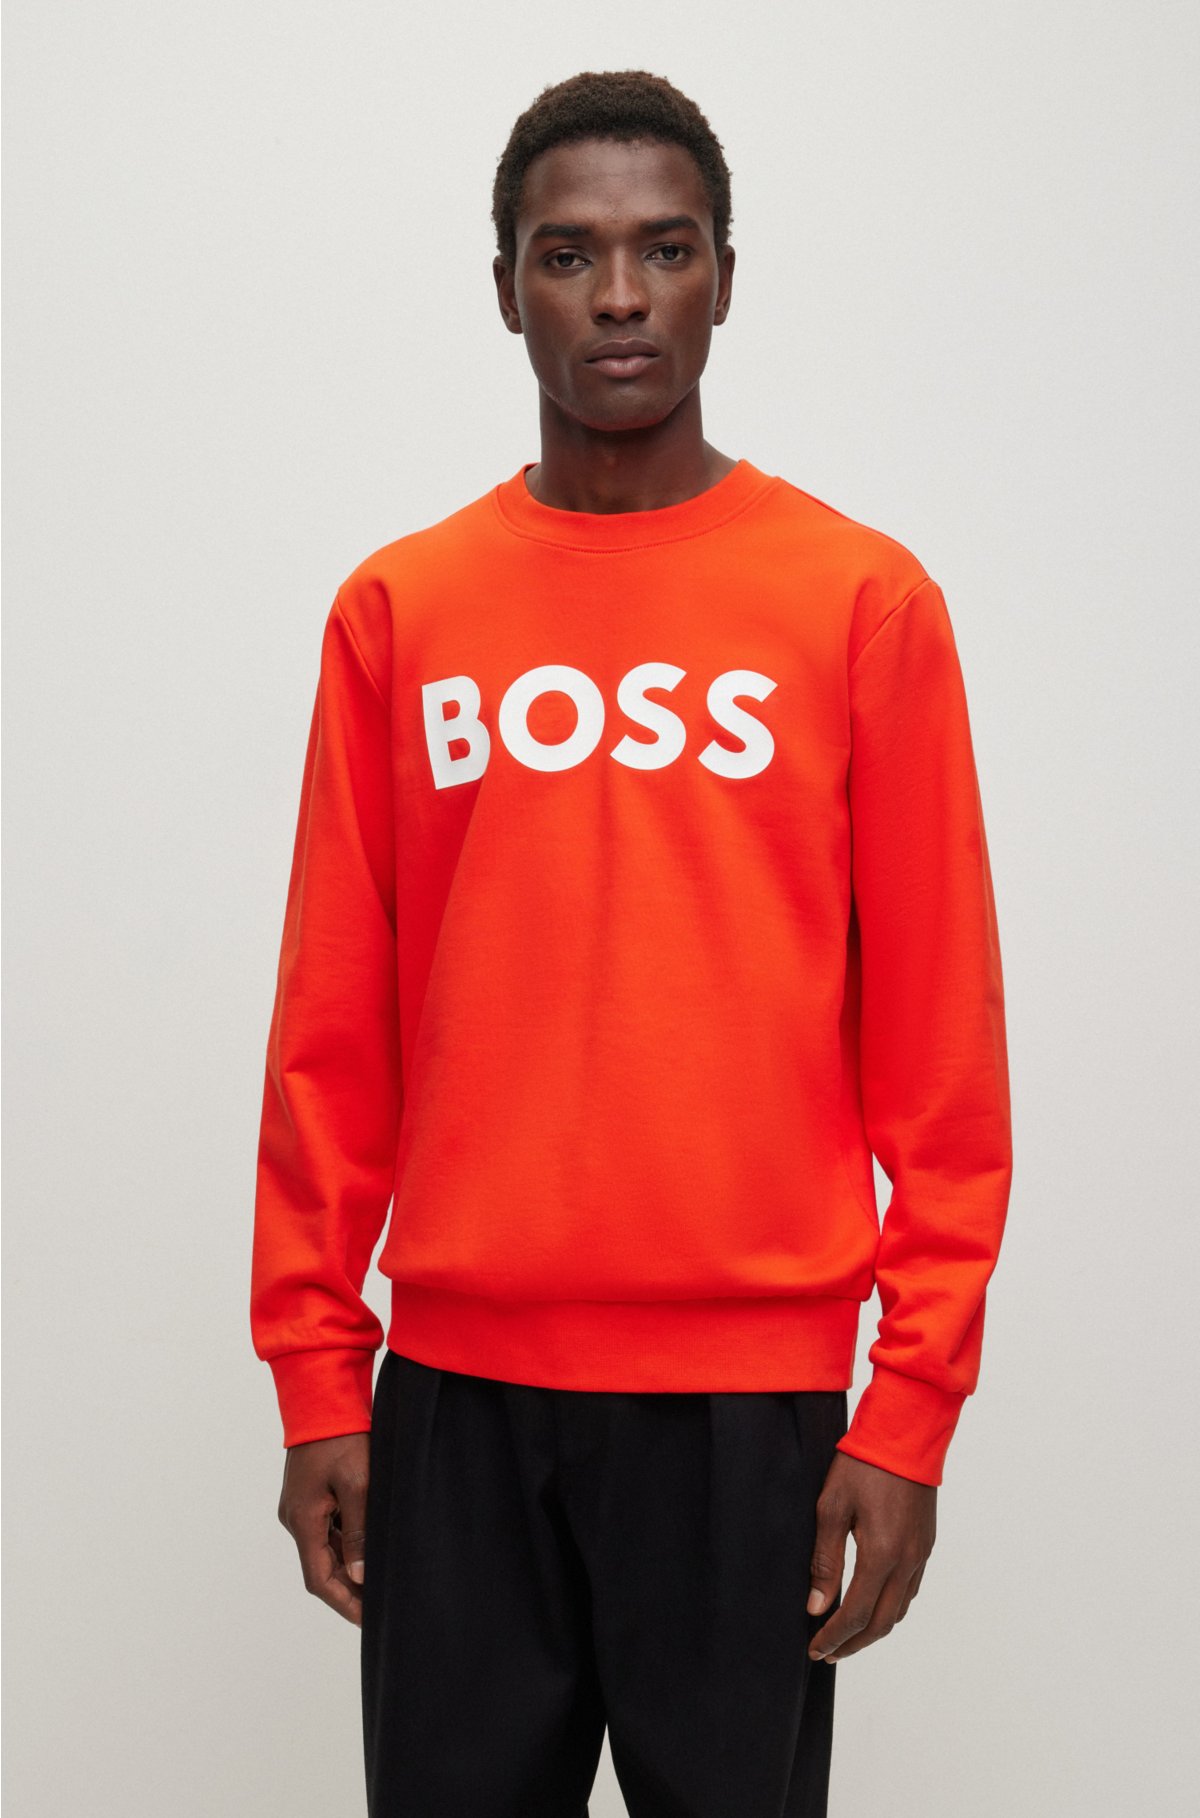 BOSS - sweatshirt with